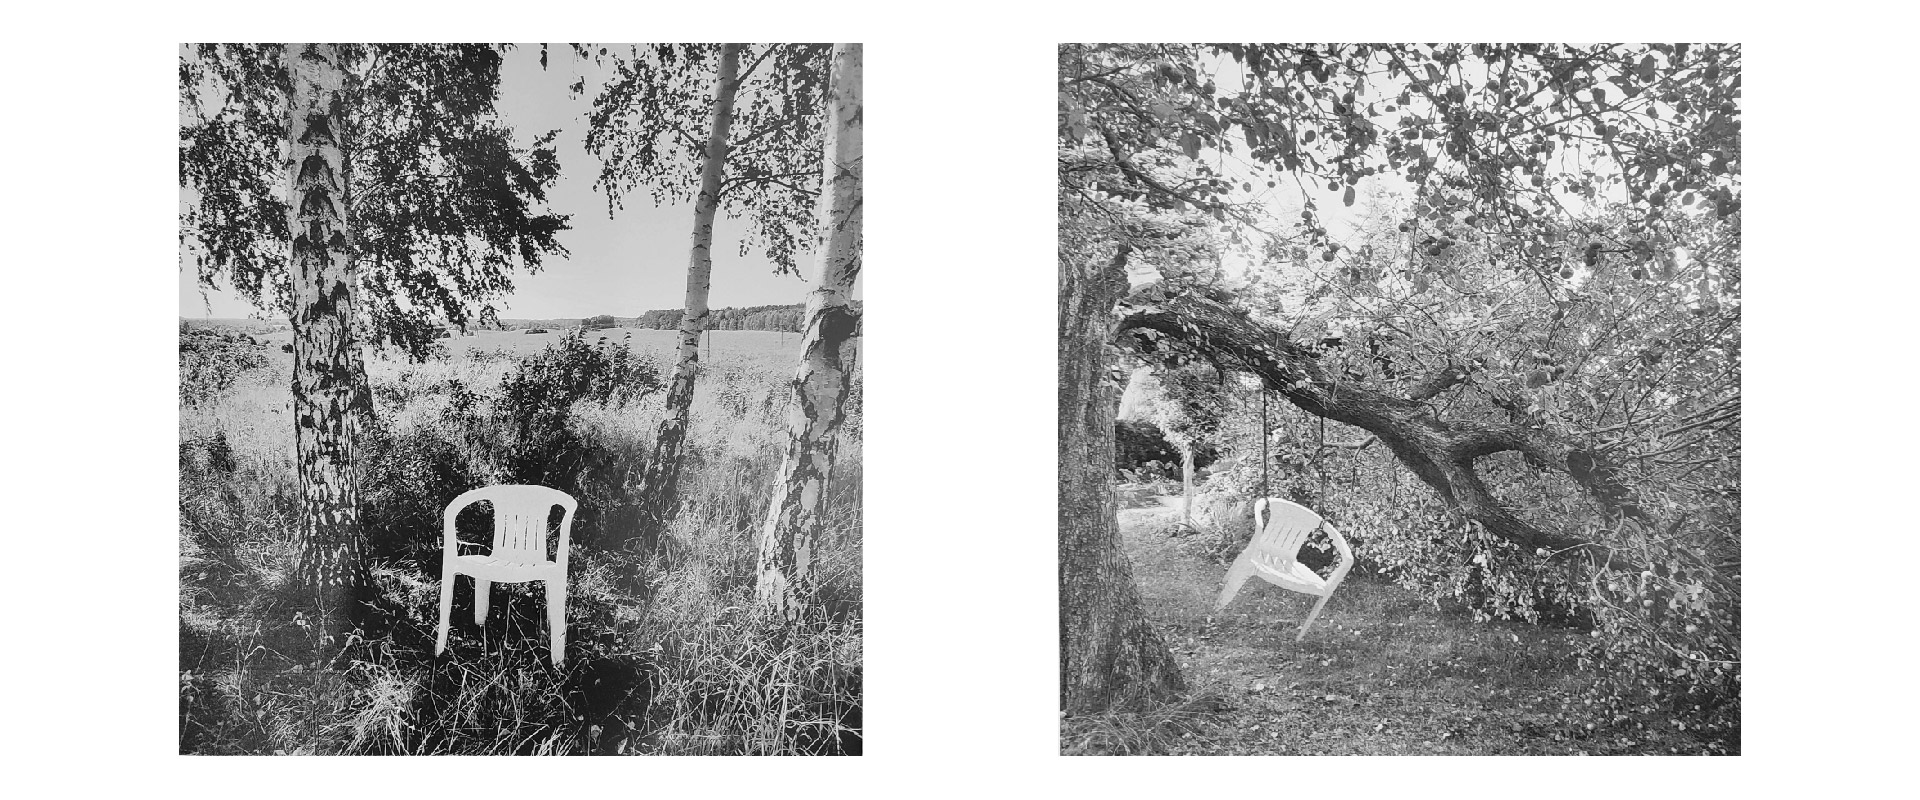 Obraz przedstawia zdjęcie plastikowego krzesła pośród brzóz na tle pejzażu. Obraz sąsiedni przedstawia takie samo krzesło zawieszone na drzewie. Oba obrazy są czarno białe.